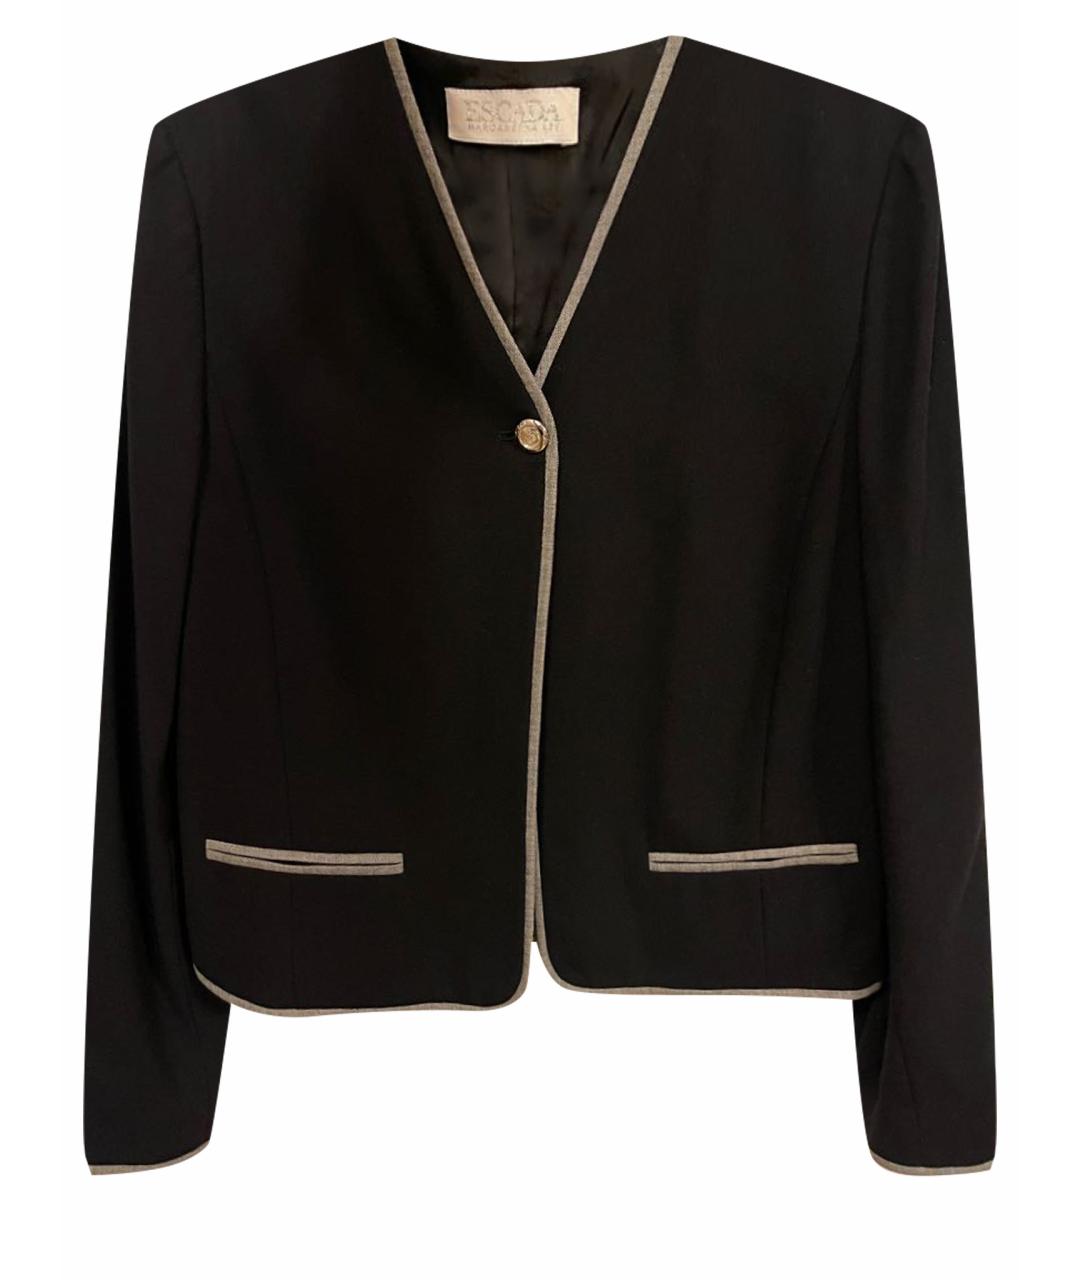 ESCADA Черный шерстяной жакет/пиджак, фото 1